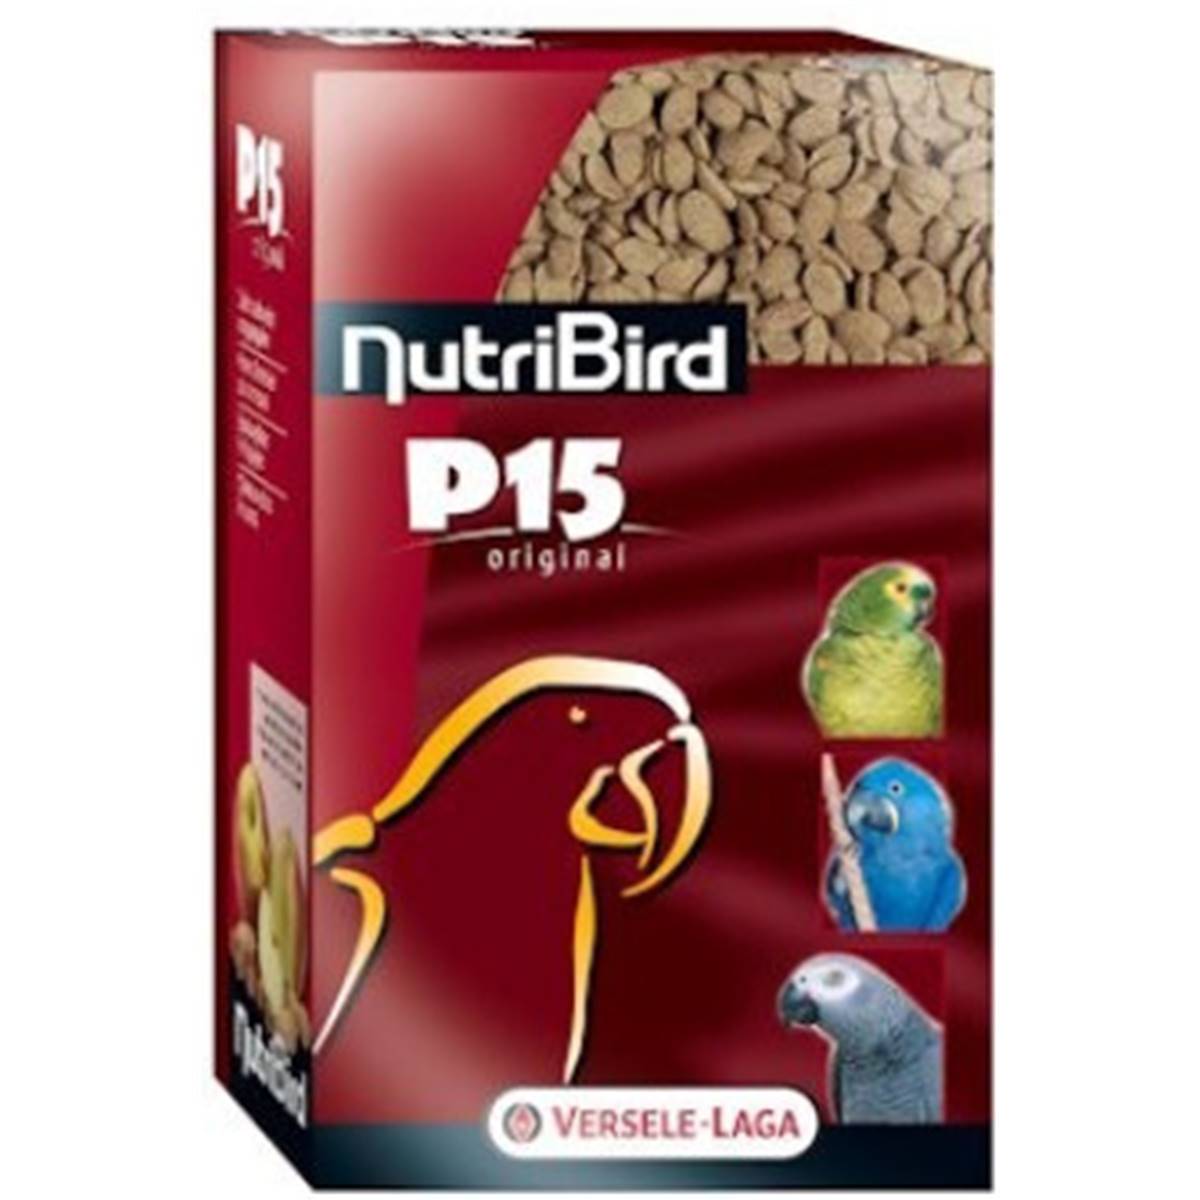 nutribird-p15-original-1kg